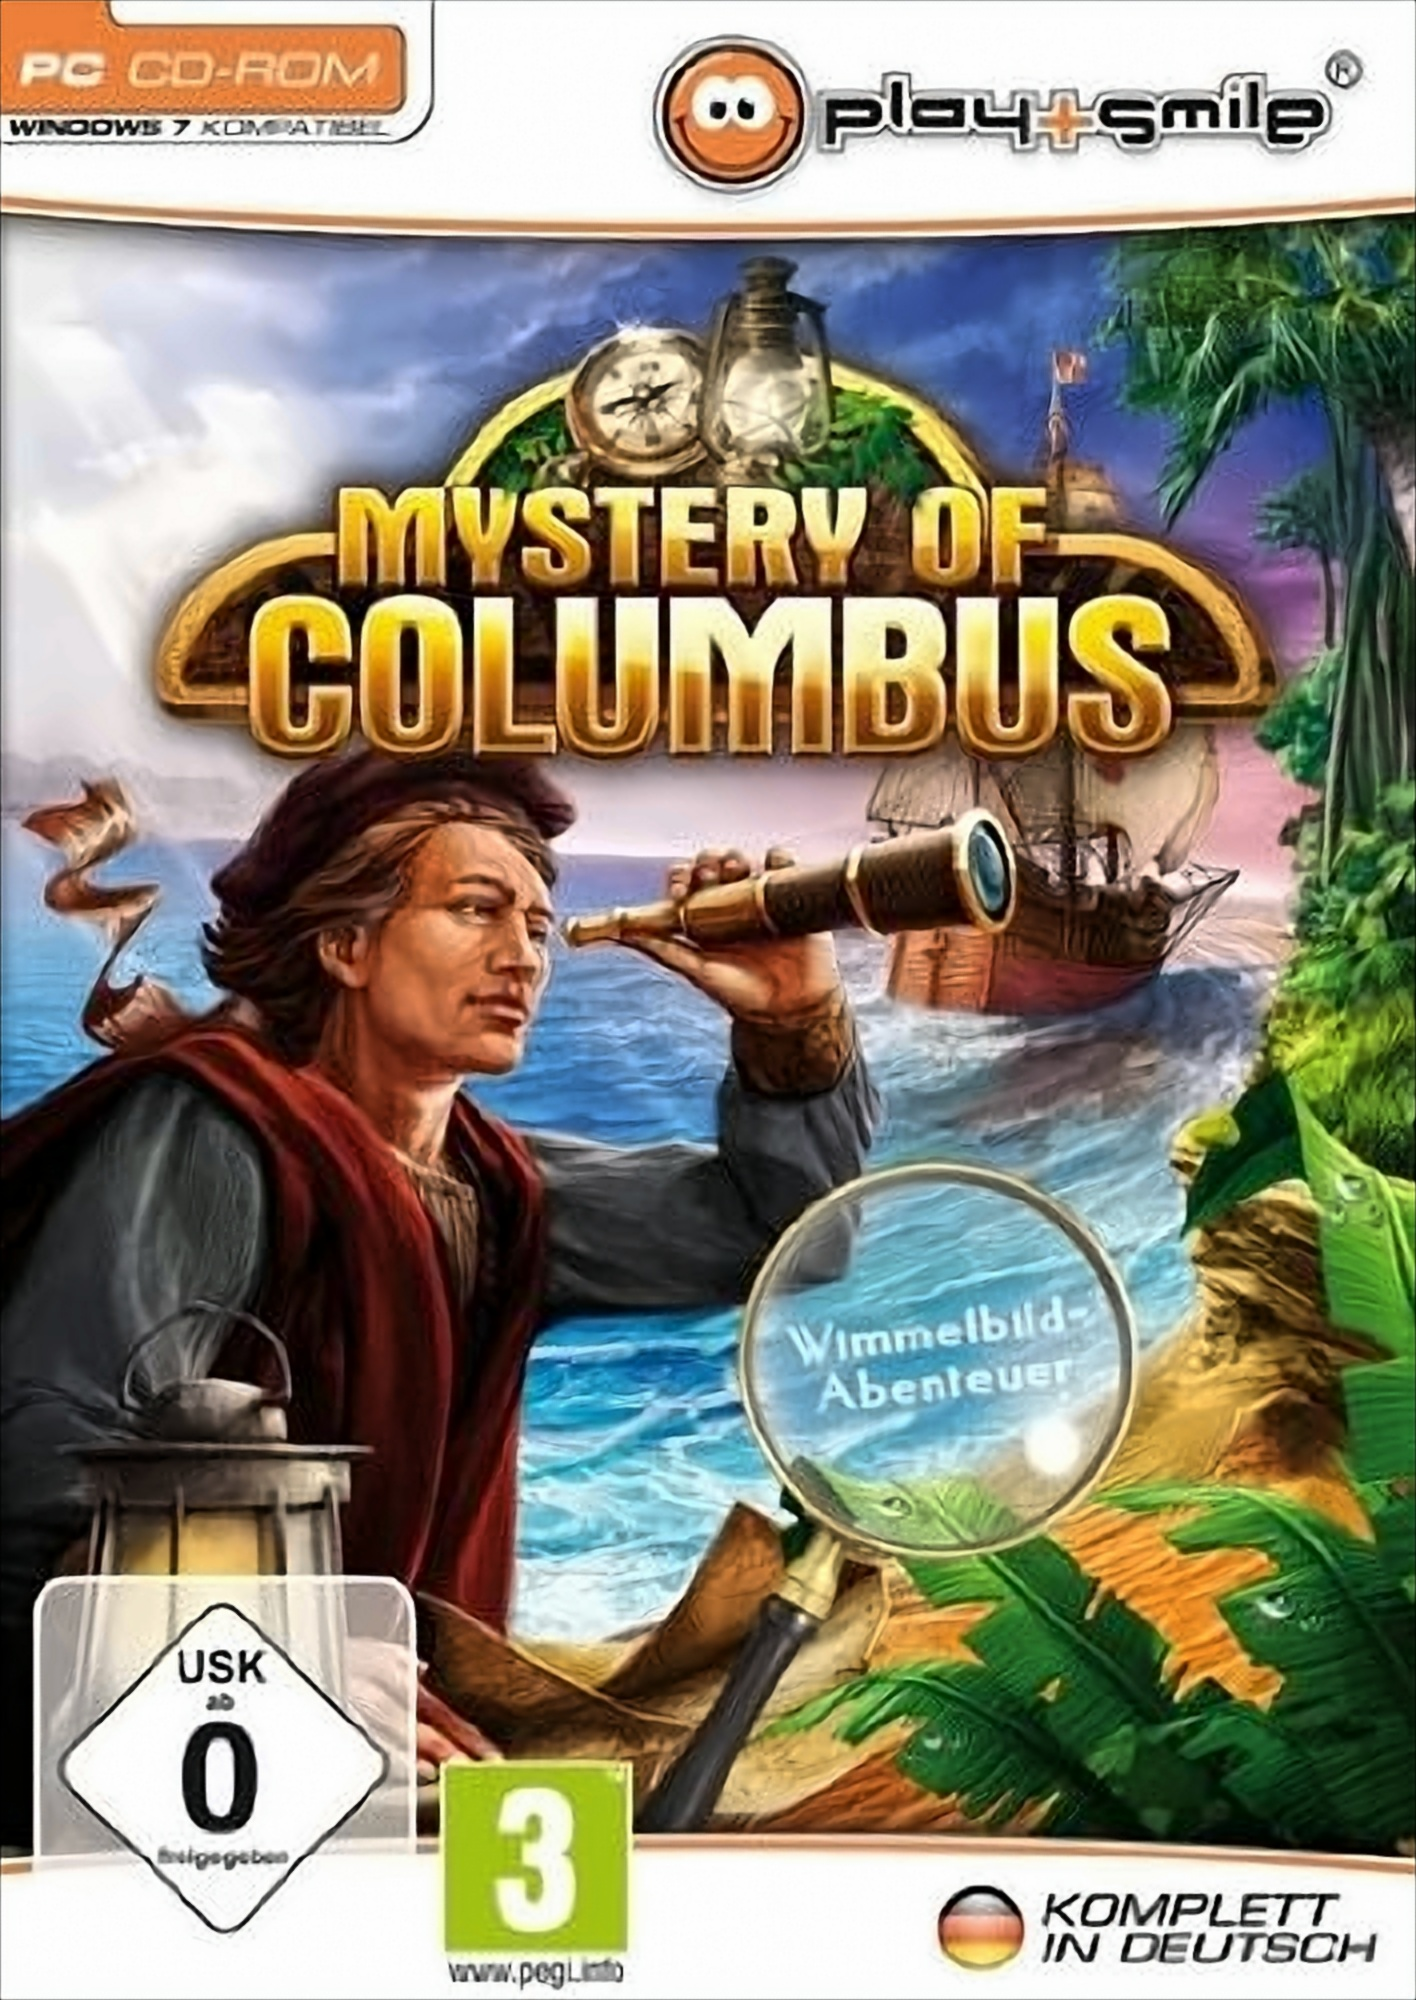 Ancient Spirits: Die Legende - Columbus von [PC